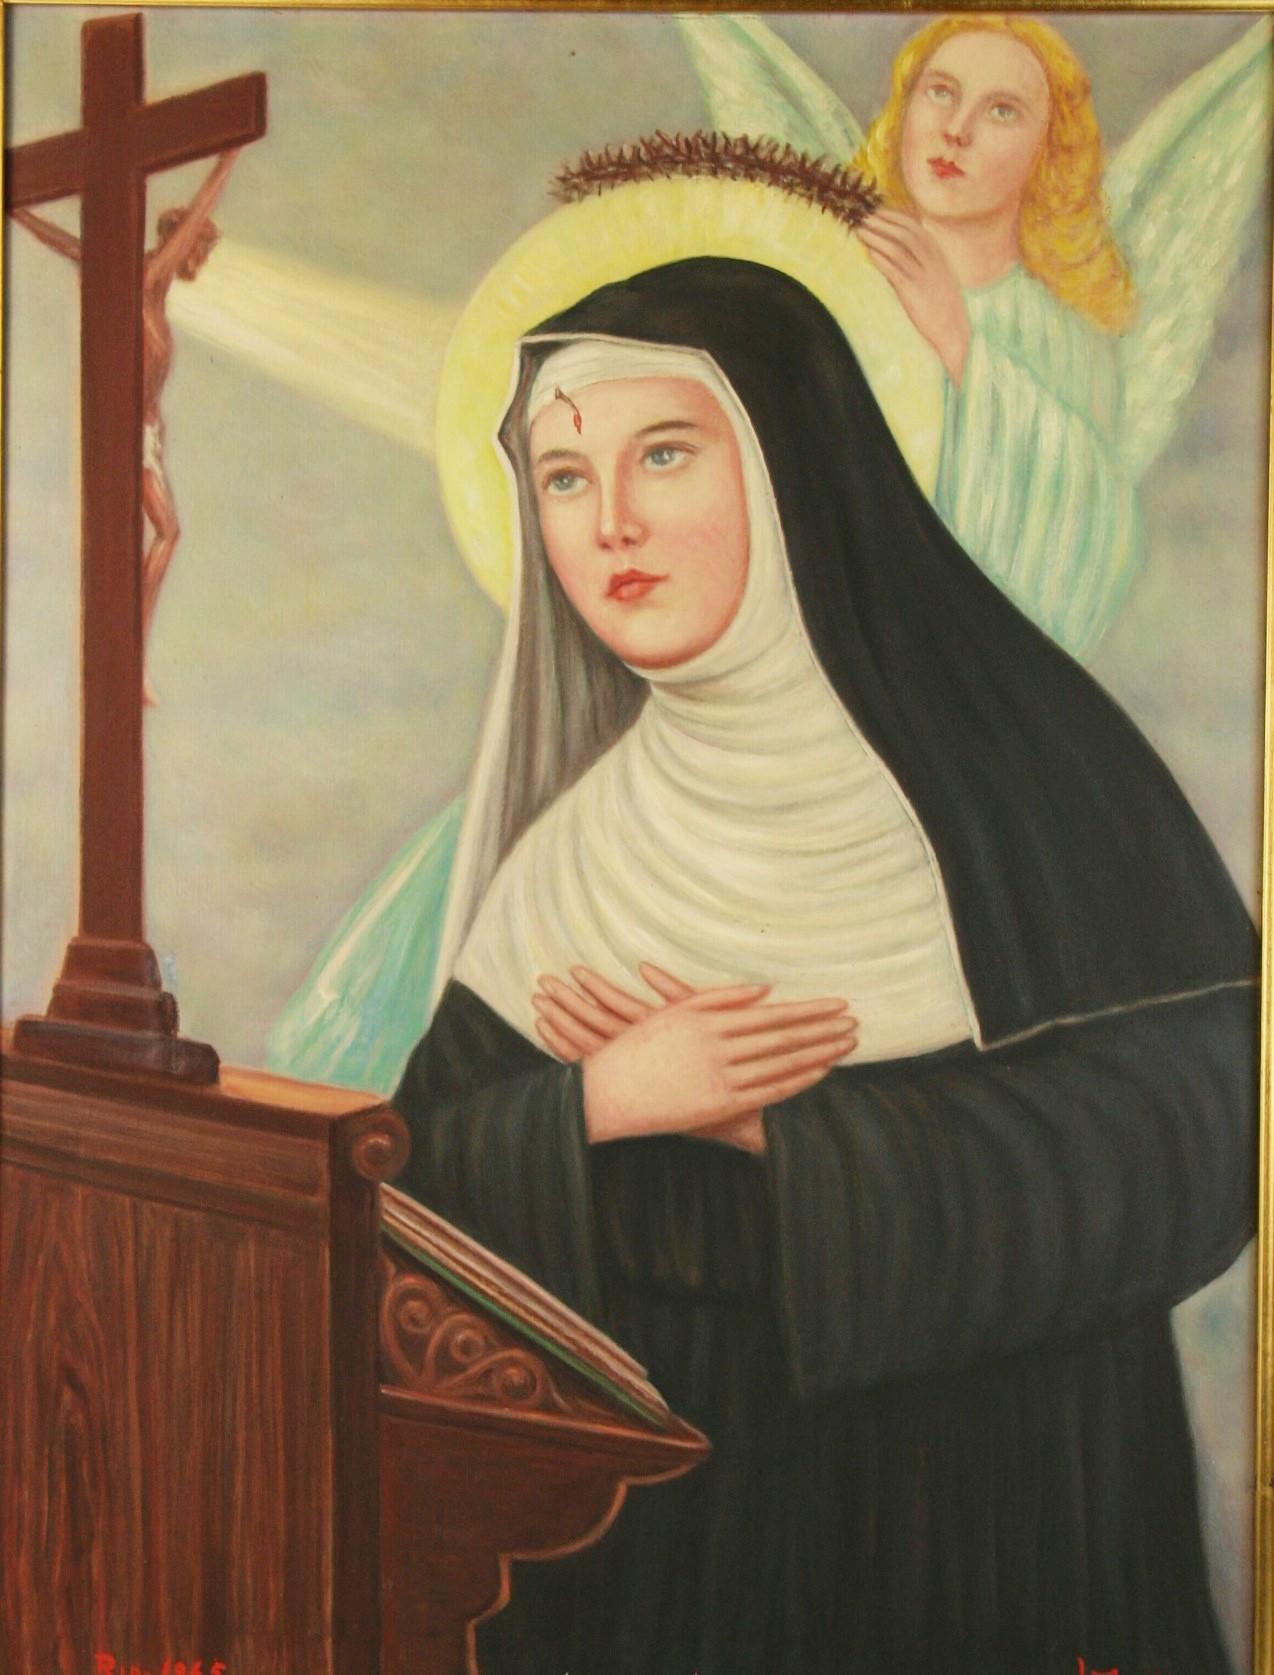 3805 Italian Religious oil painting of saint Rita the first woman stigmata
Image size 21x23
